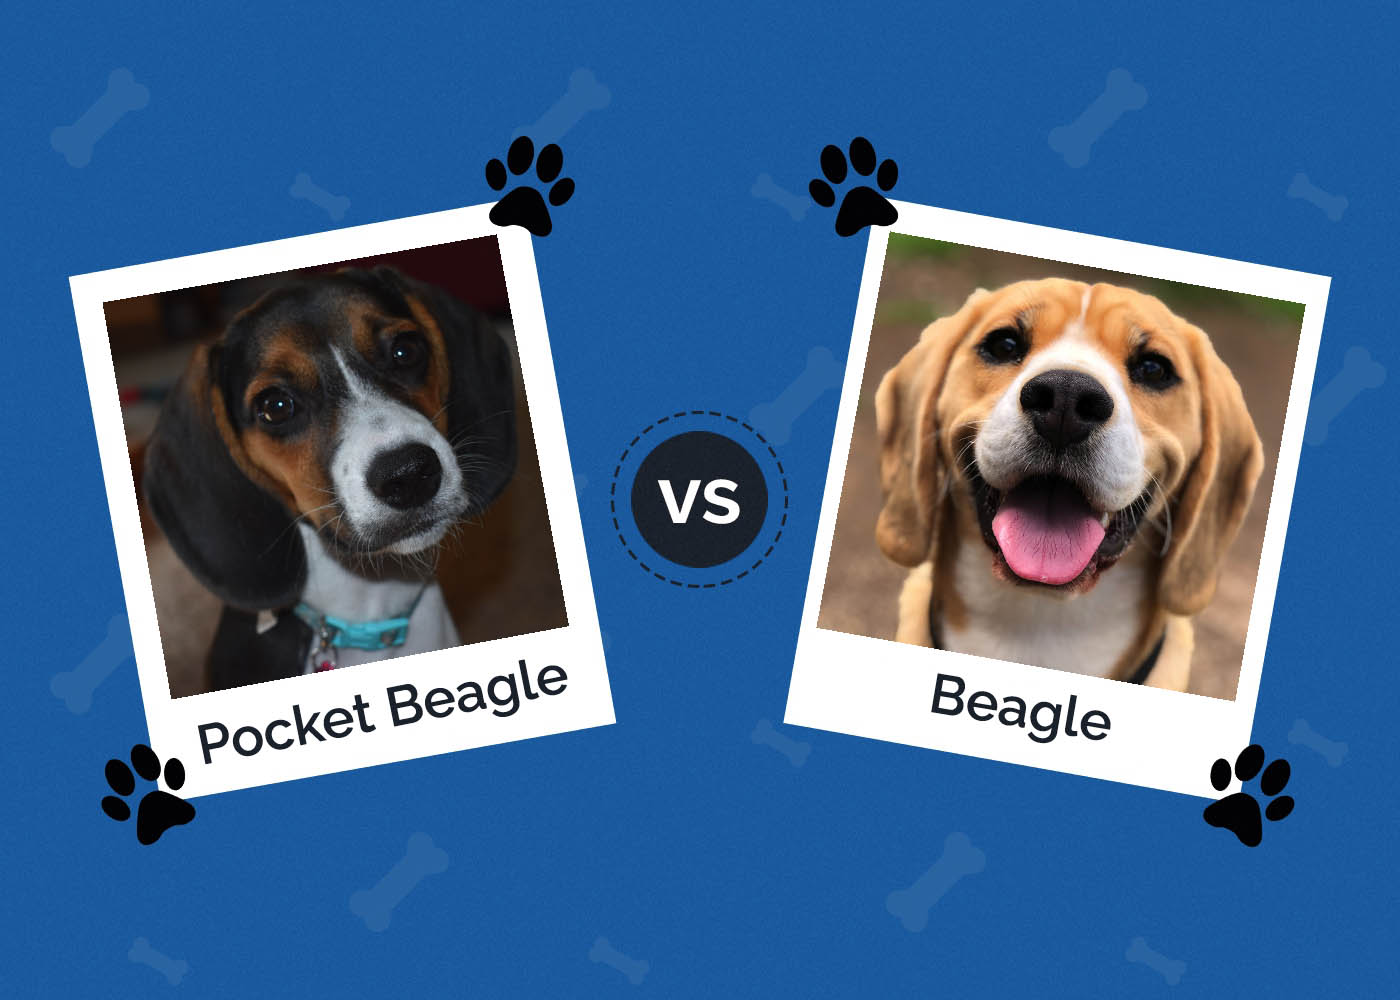 Pocket Beagle vs Beagle